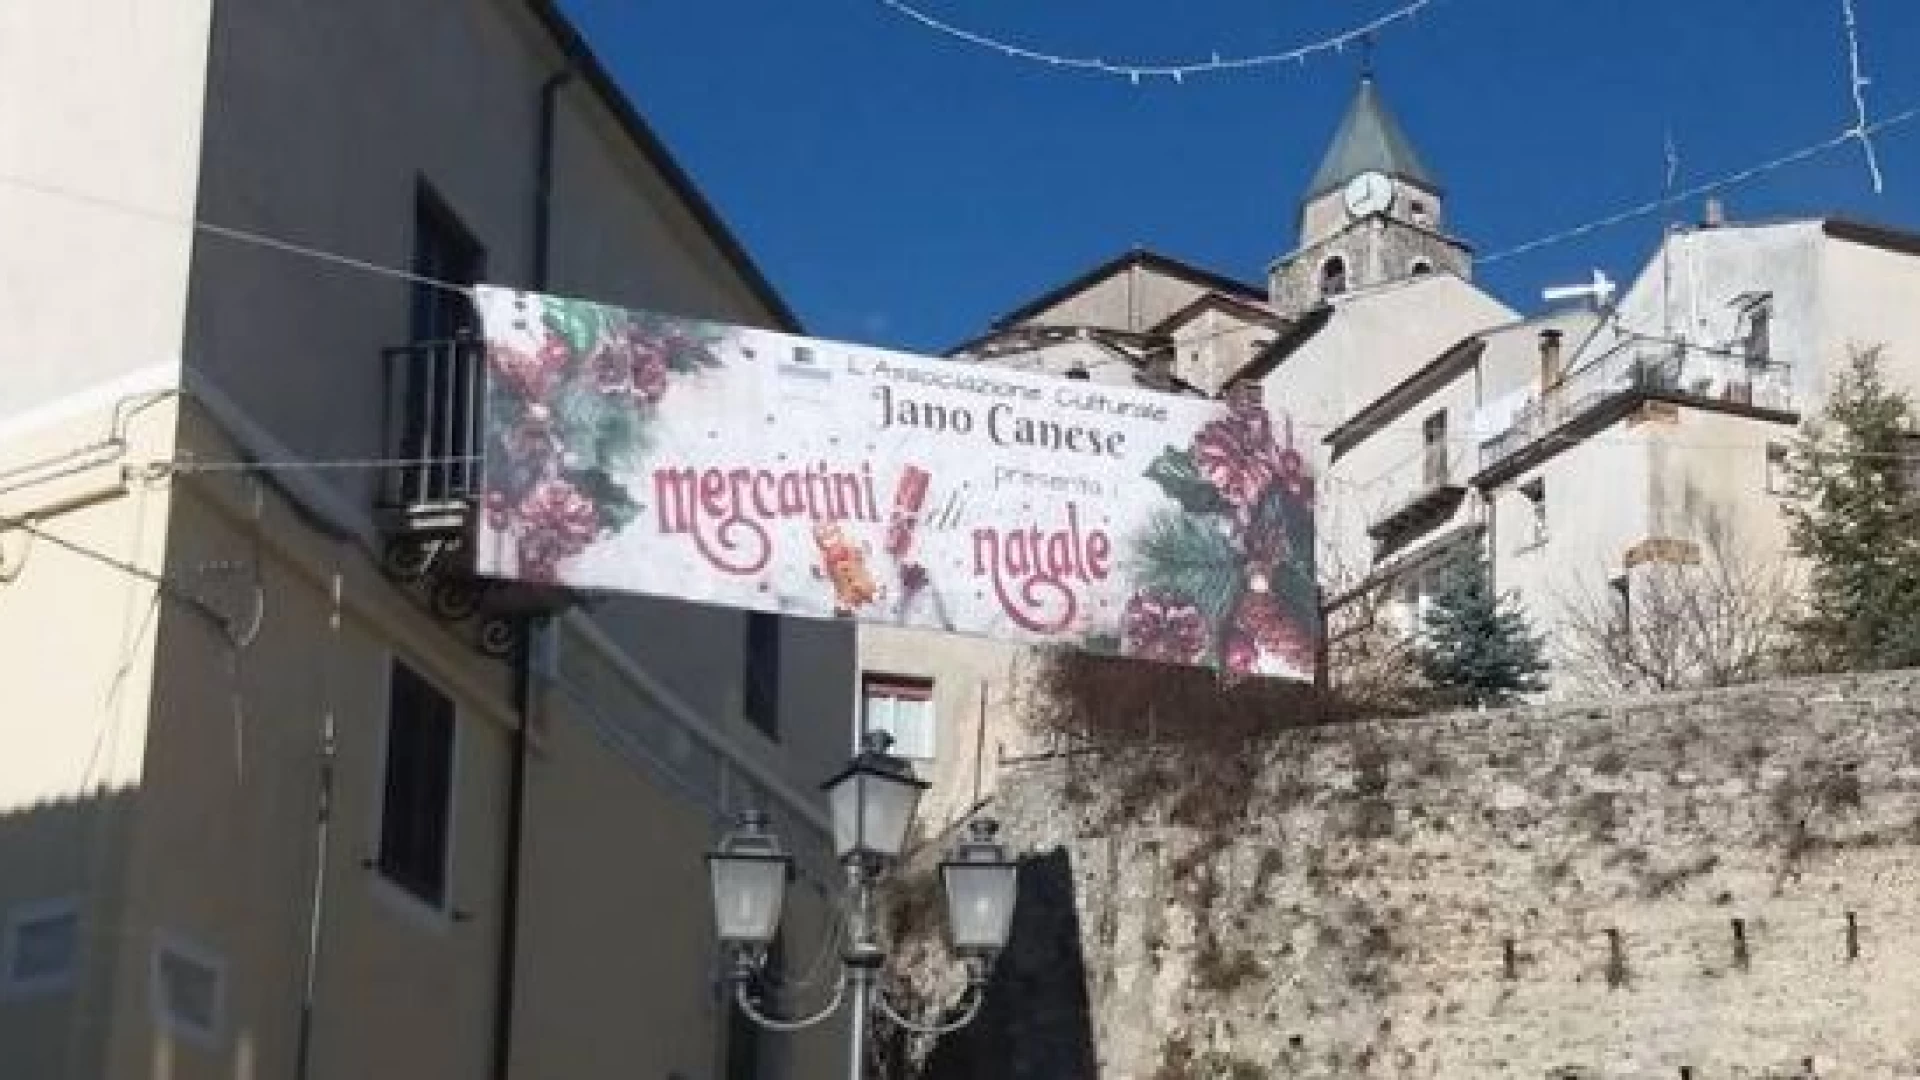 Il 30 giugno evento da non perdere con “Carpinone in Fiore”. Rassegna organizzata dall’associazione culturale “Jano Canese”.